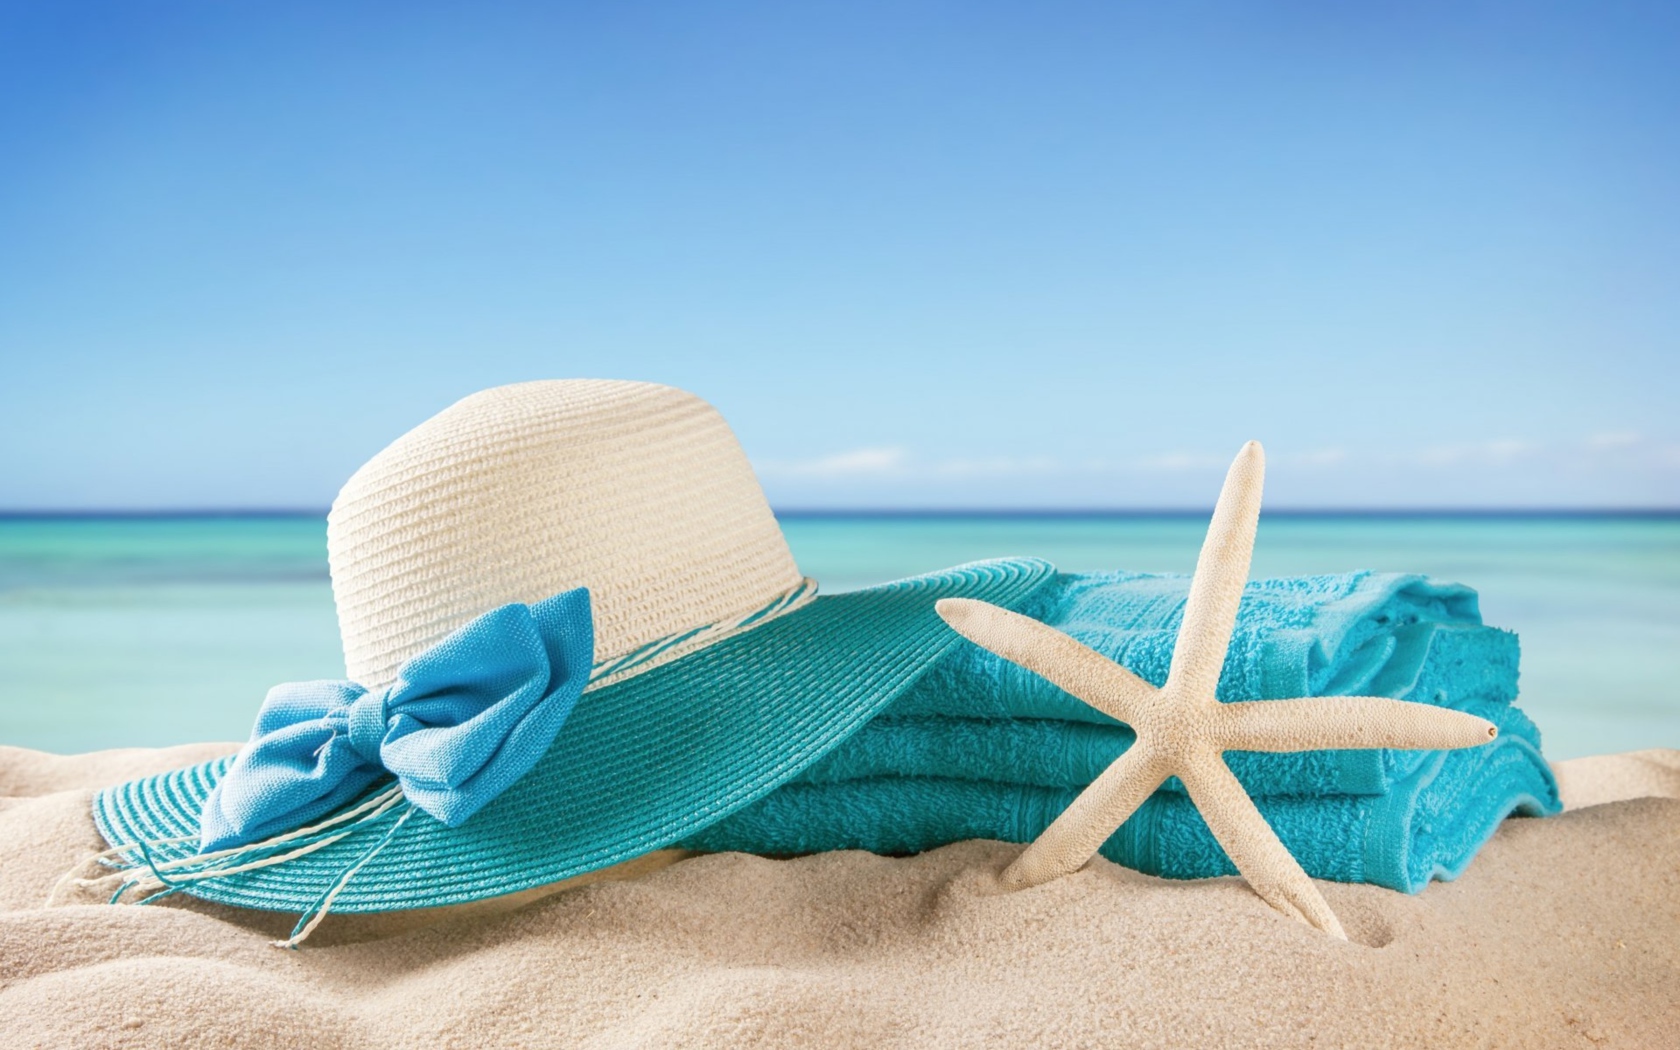 Большая шляпа, голубое полотенце и морская звезда на песке летом